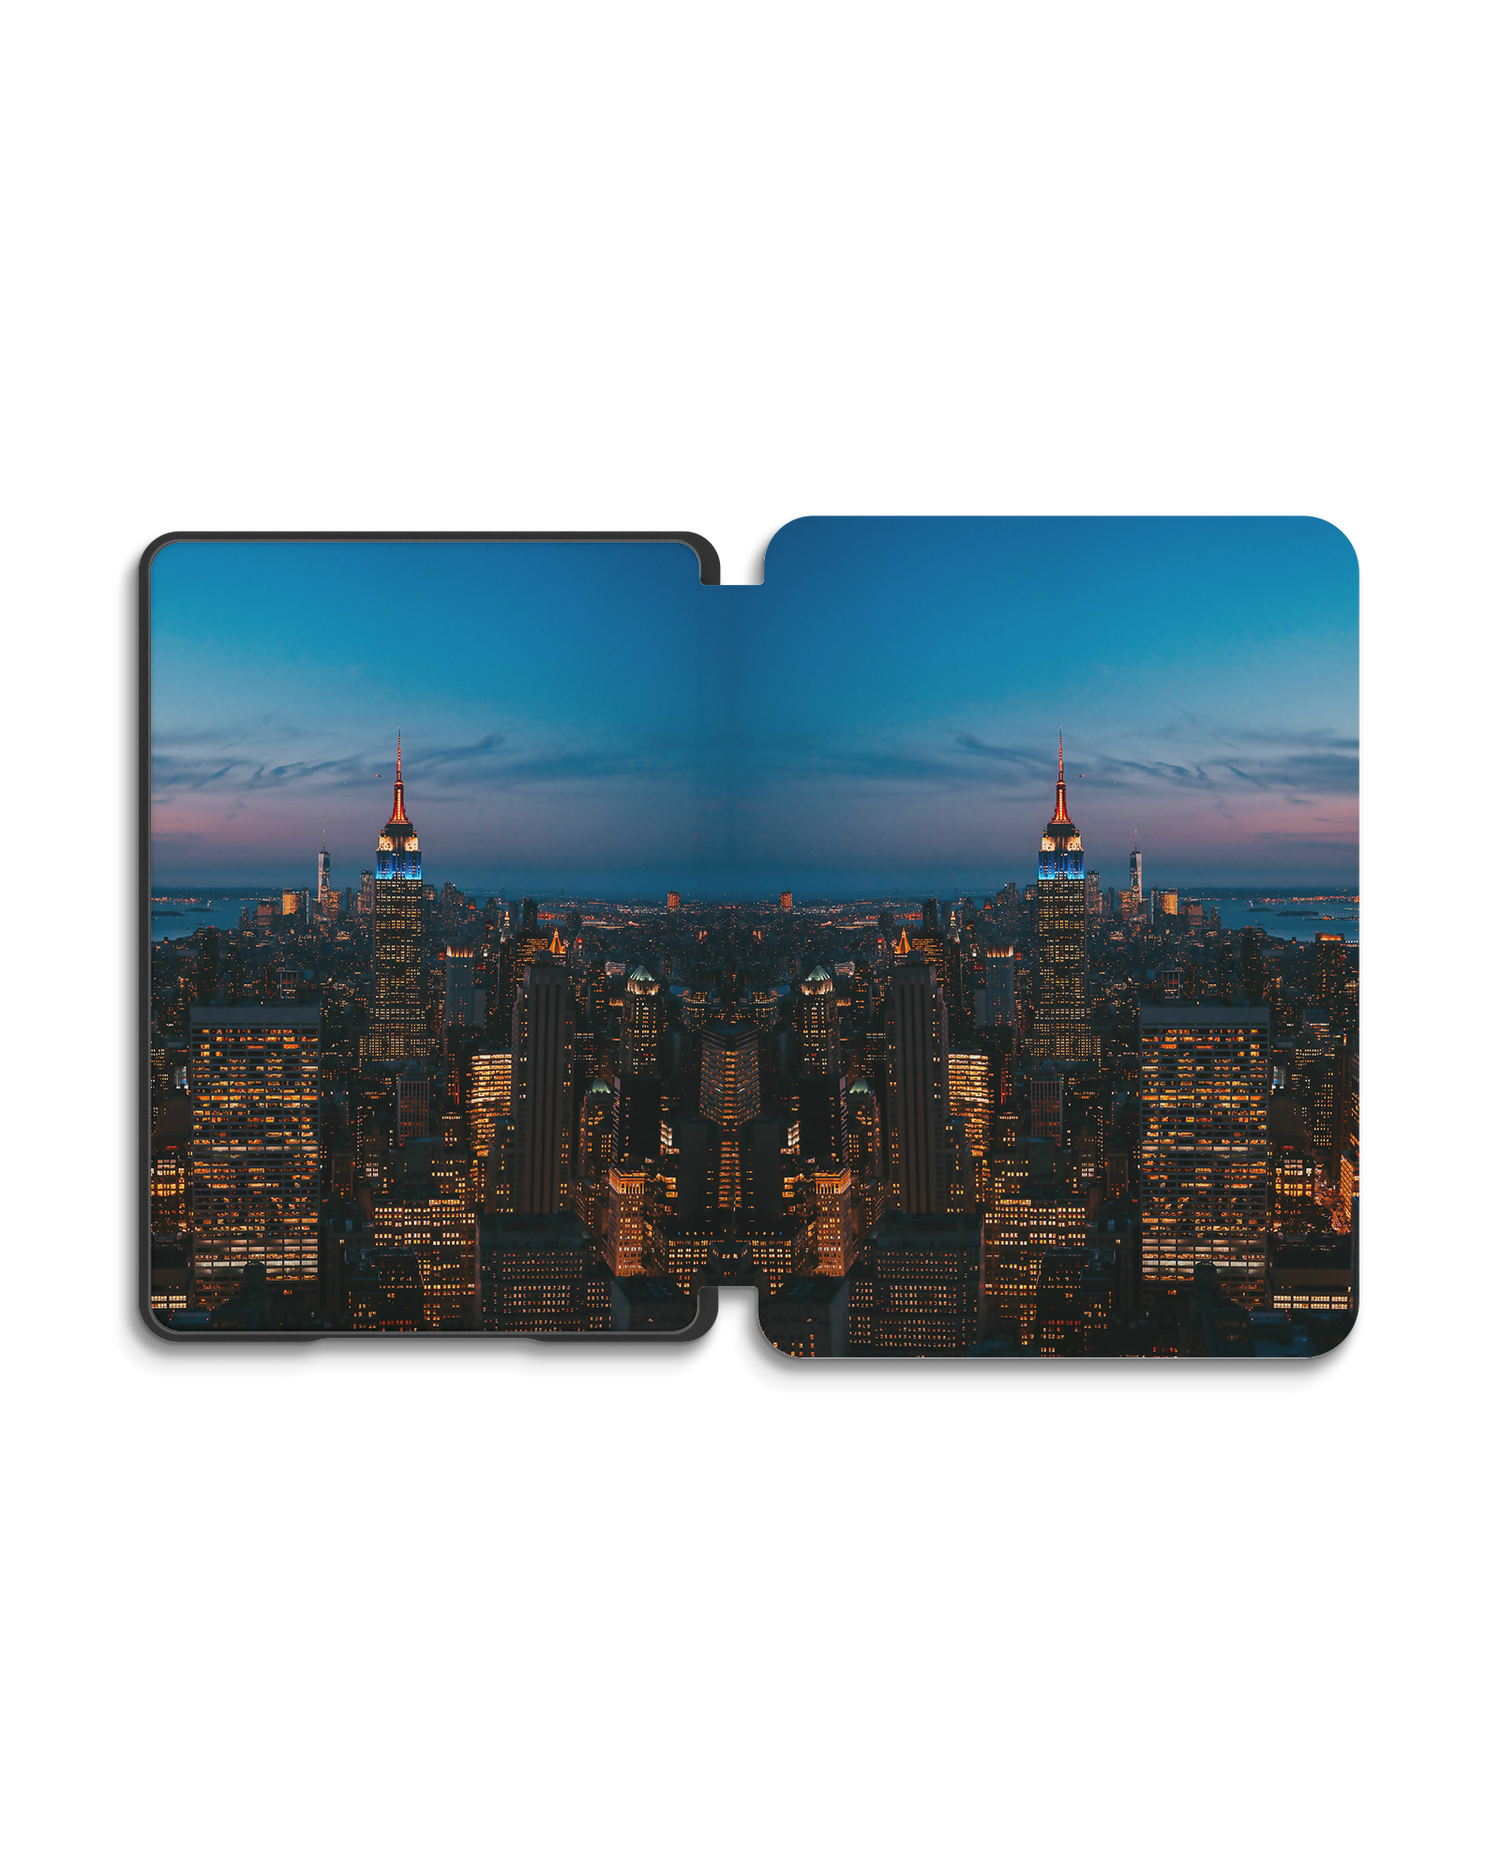 New York At Dusk eBook Reader Smart Case für Amazon New Kindle (2019): Geöffnet Außenansicht